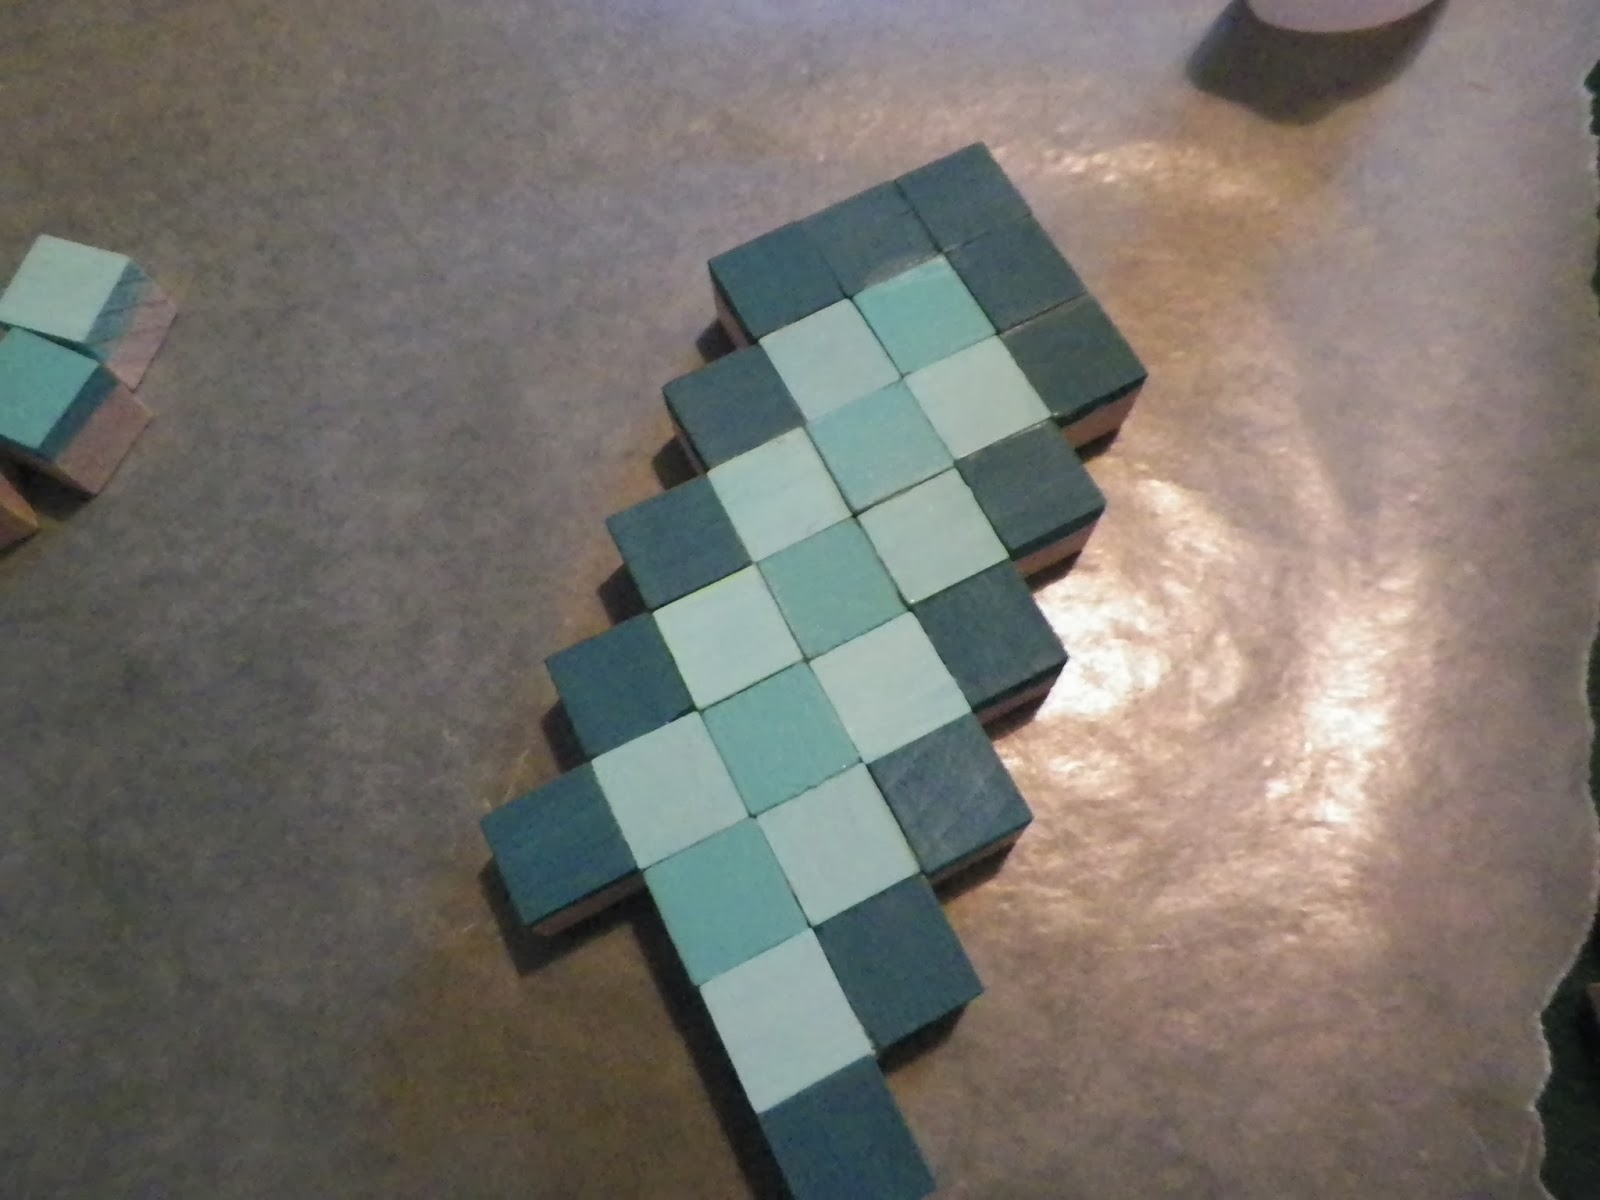 Cassie's Creative Crafts: Minecraft Sword Tutorial Using Wooden Blocks